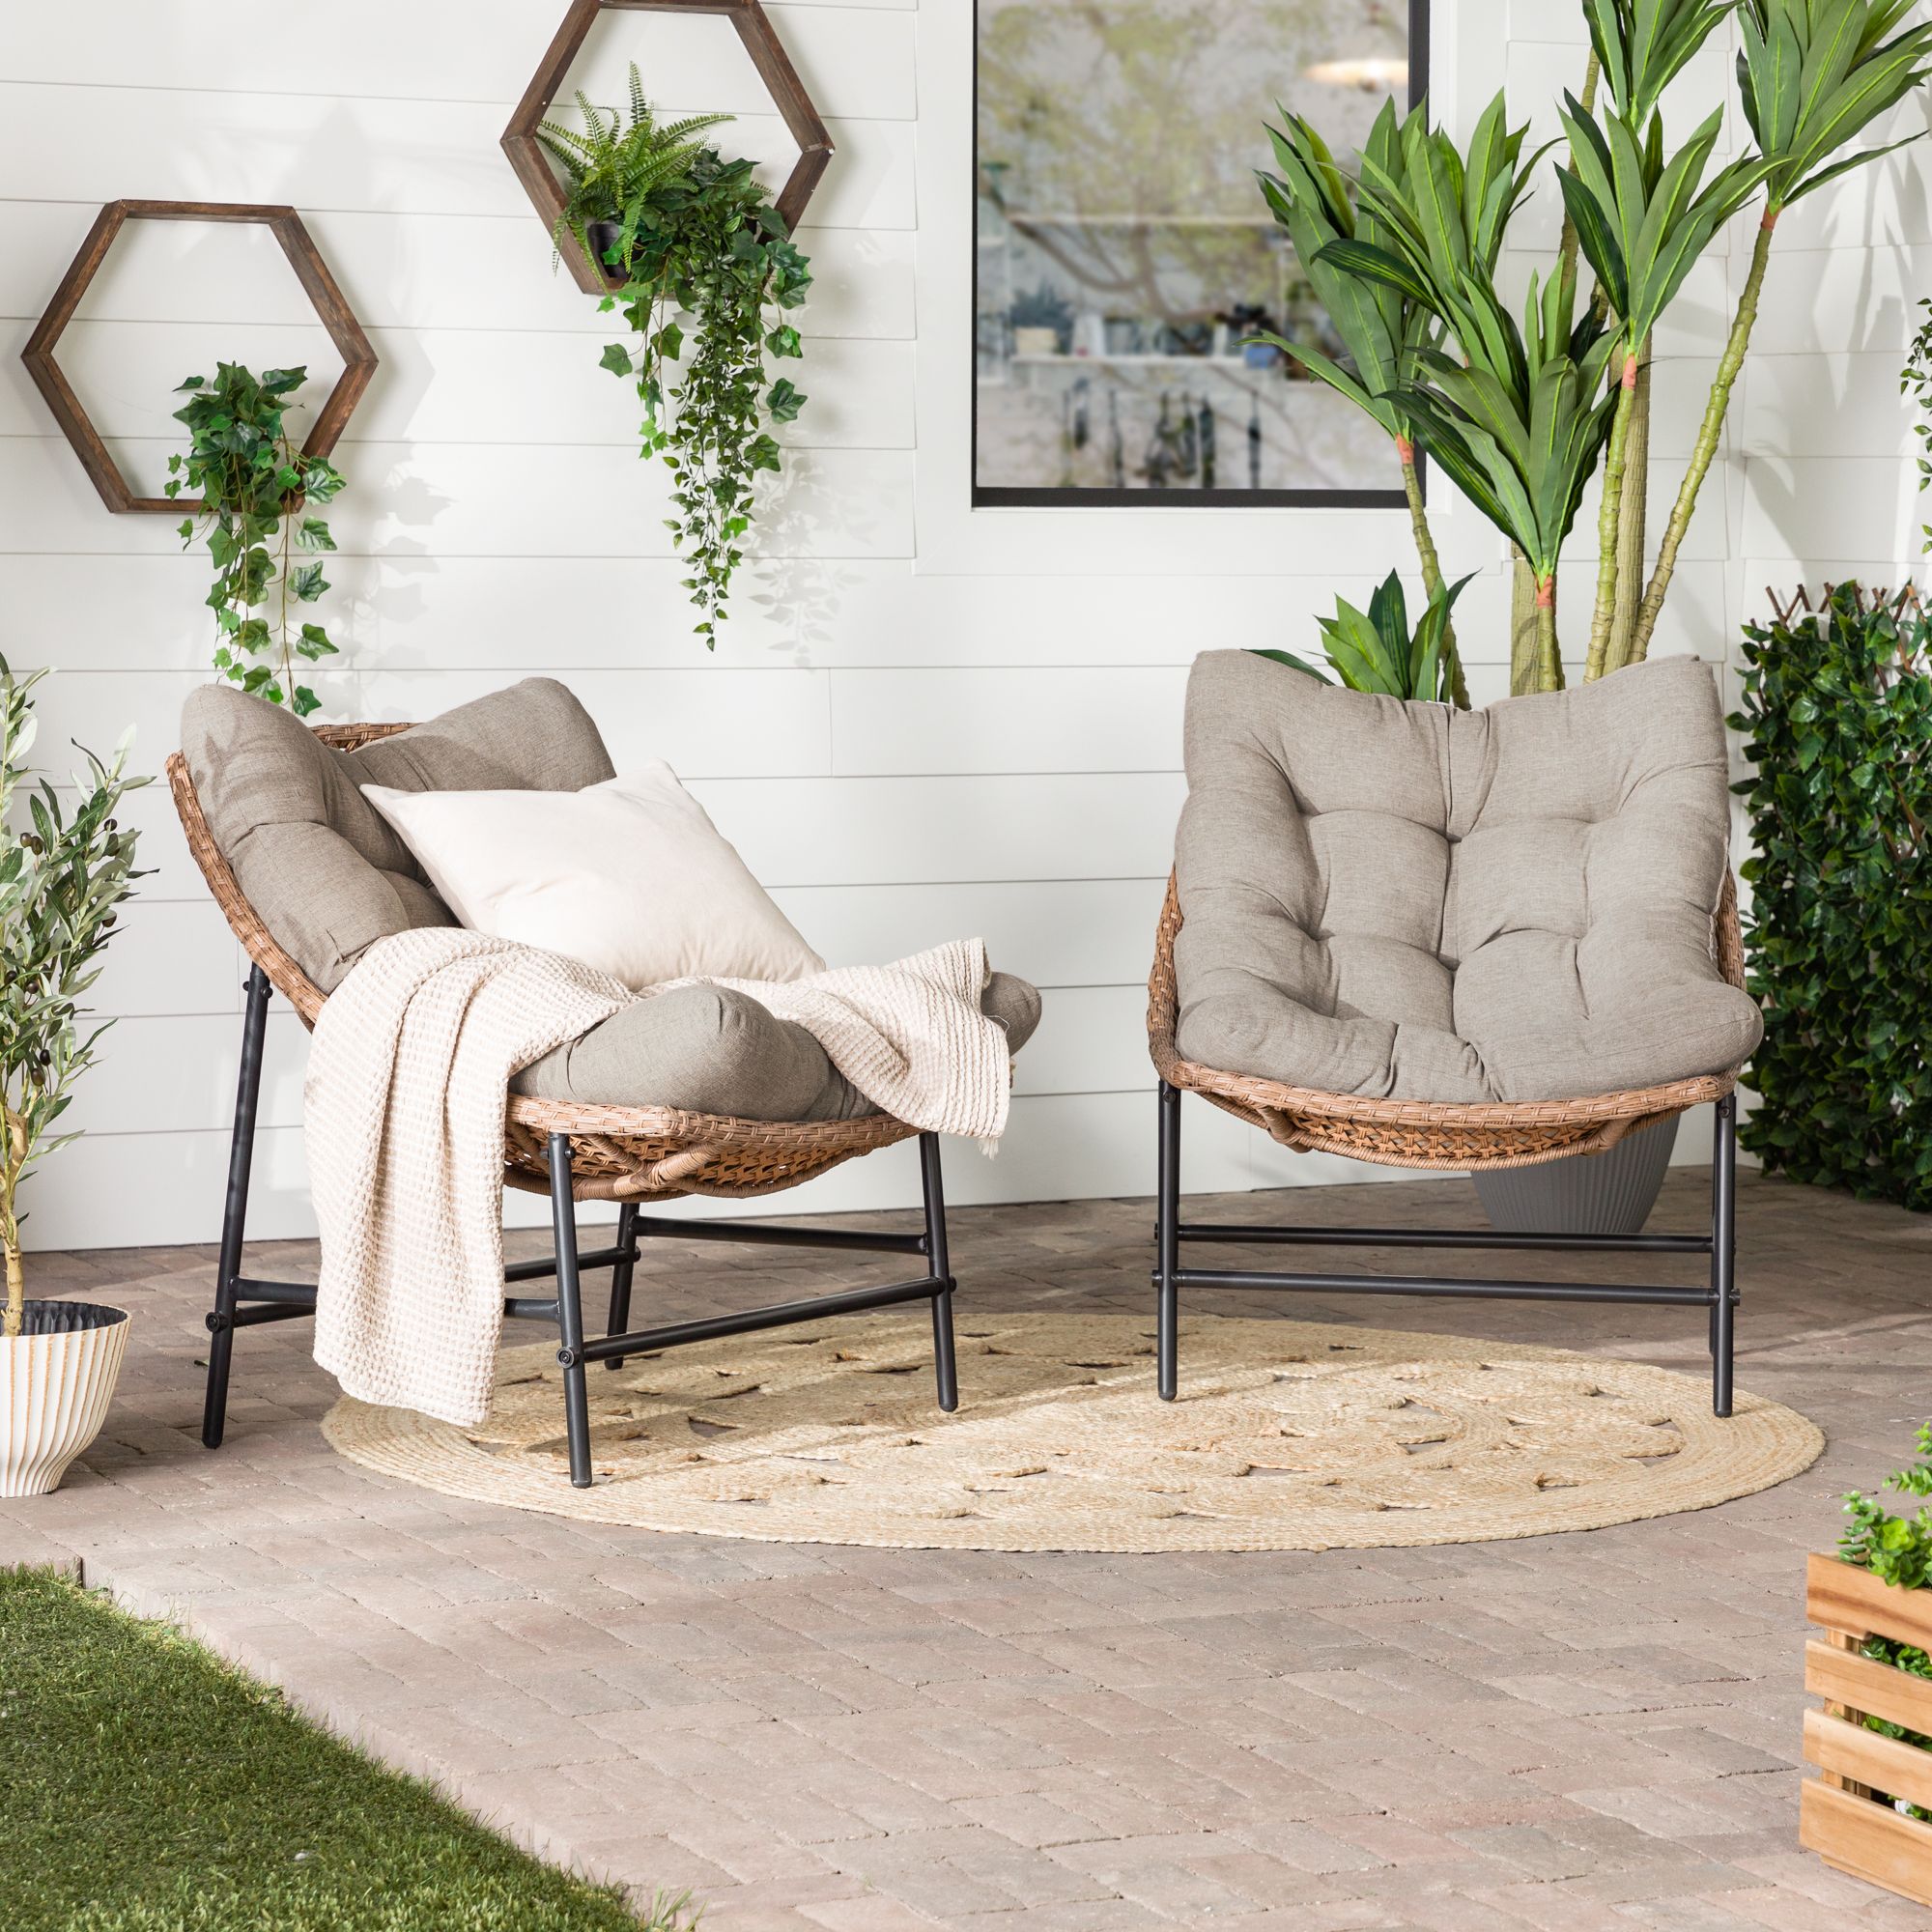 Wicker Furniture  Browse Sets of Outdoor & Indoor Wicker